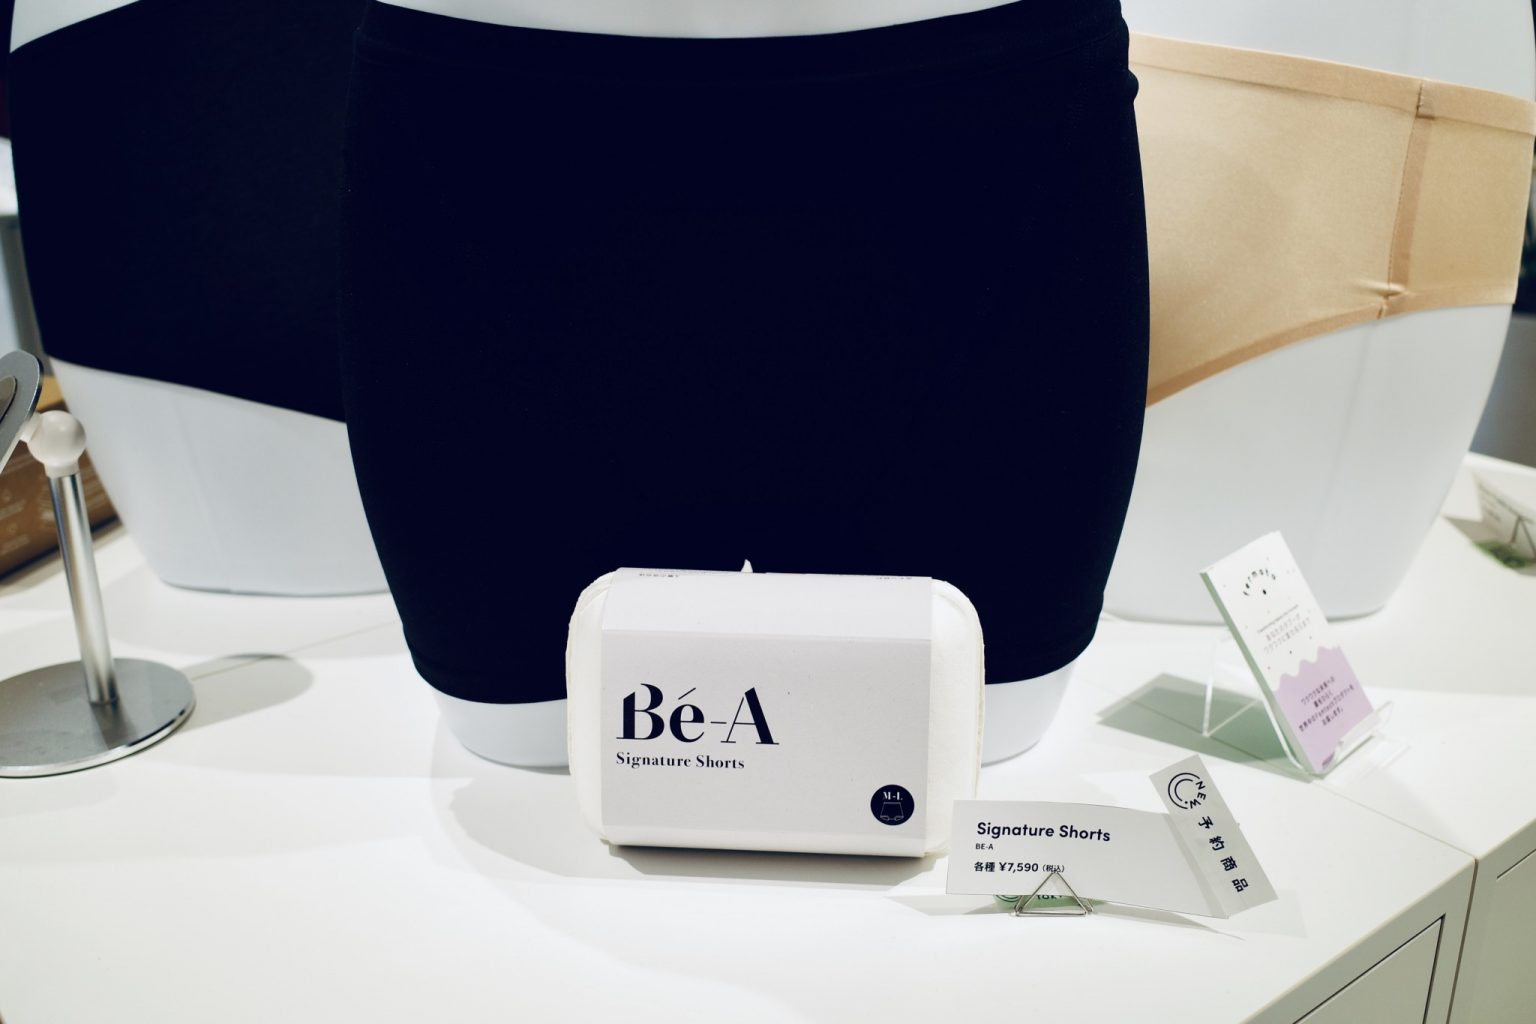 120mlを吸水可能な生理用ショーツ「Bé-A Signature Shorts」（日本）7,590円。ナプキンと併用できるよう、股部分に便利なウィングポケットが付いている。